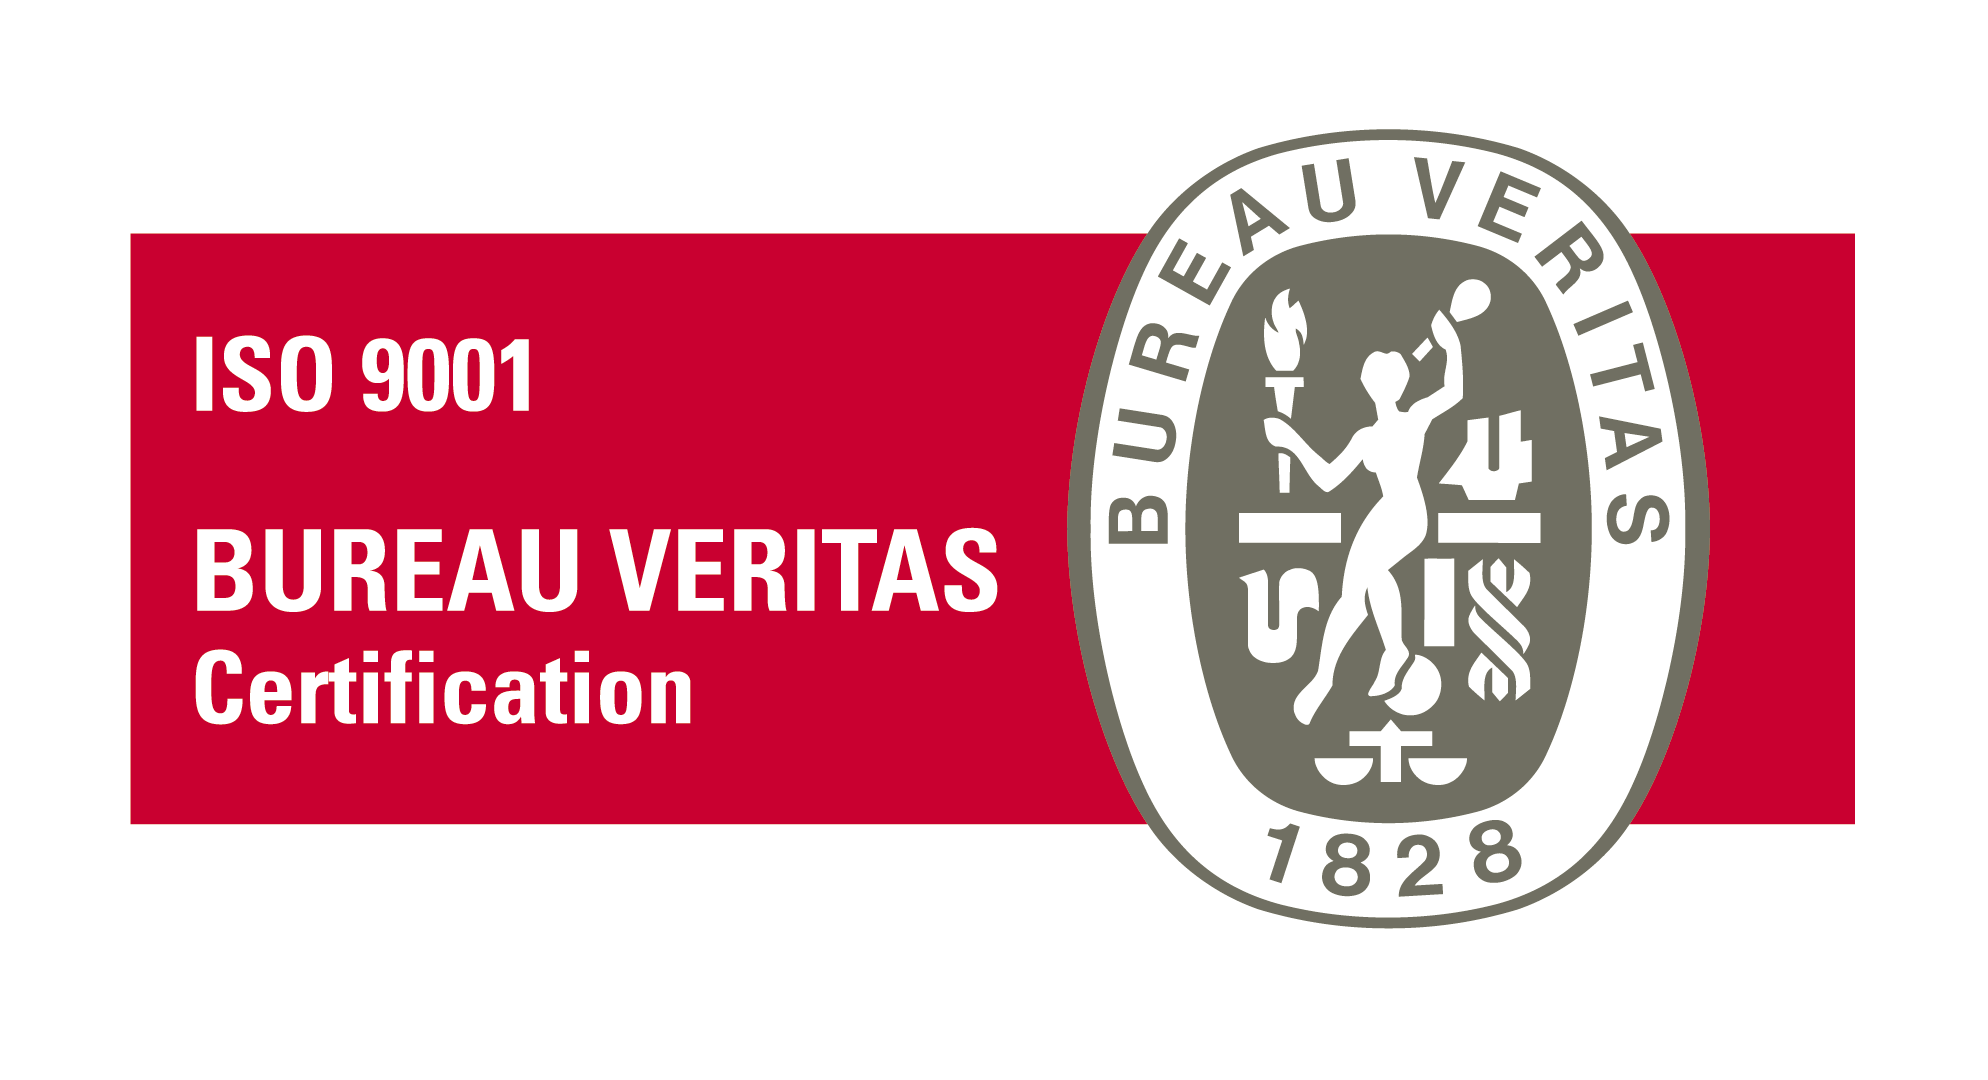 Point Vision est certifié ISO 9001 Bureau Veritas